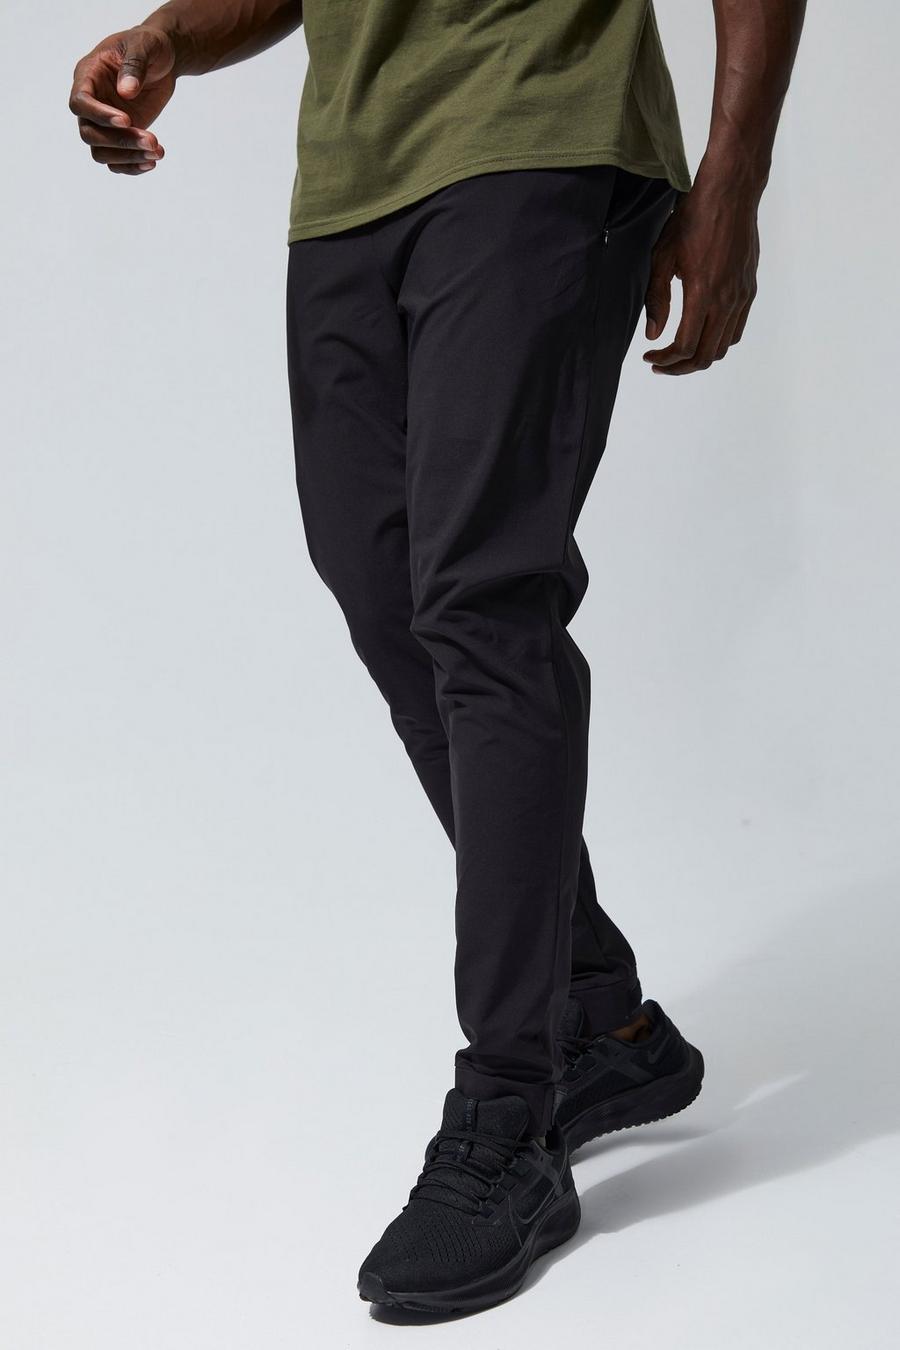 Pantaloni tuta affusolati Man Active riflettenti in velcro, Black nero